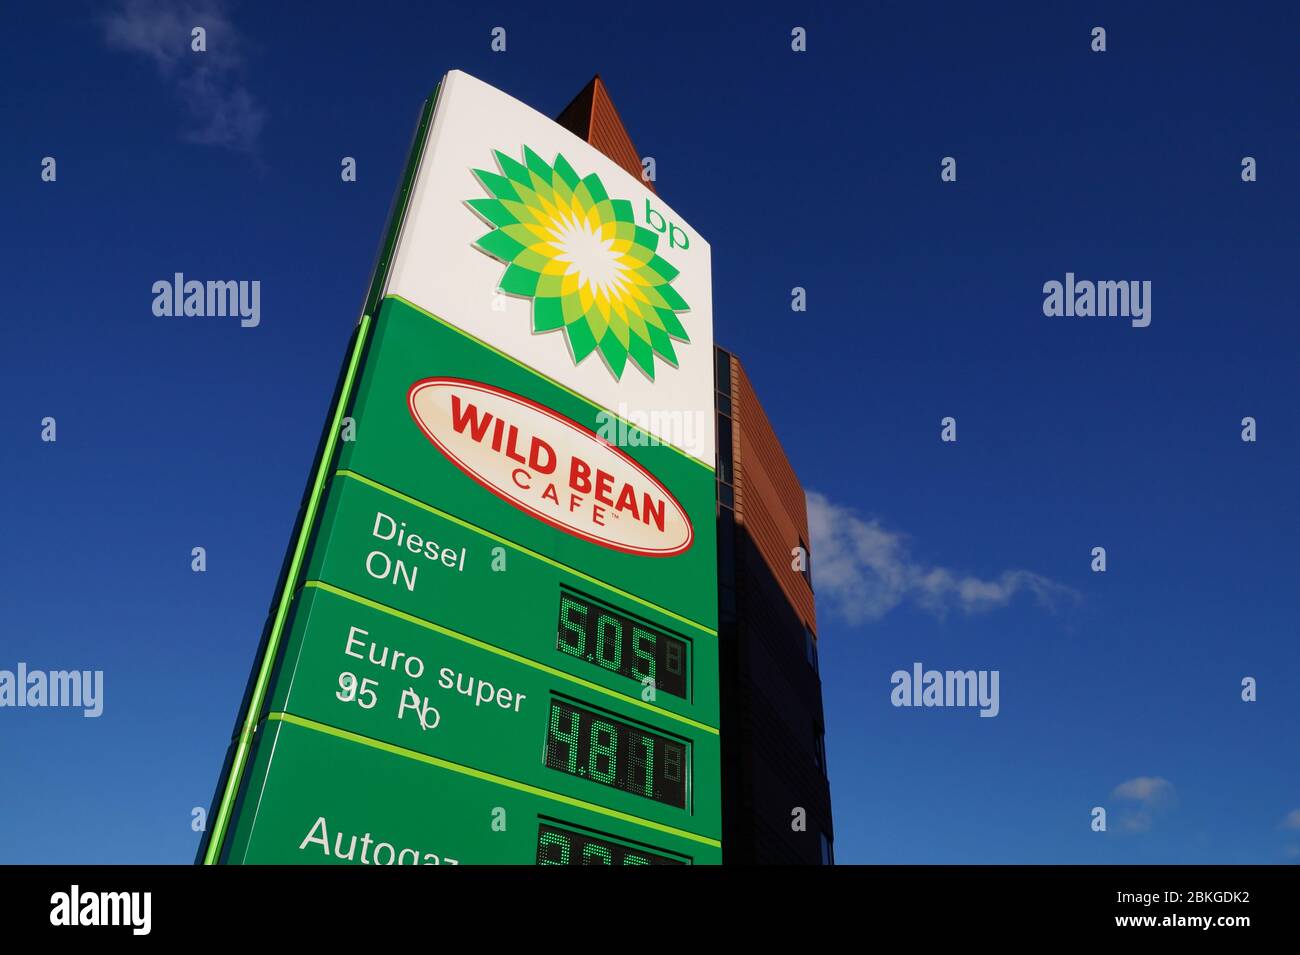 Polonia. Stazione di servizio BP. Pubblicità pilone con prezzi del carburante. Febbraio 2020. Foto Stock